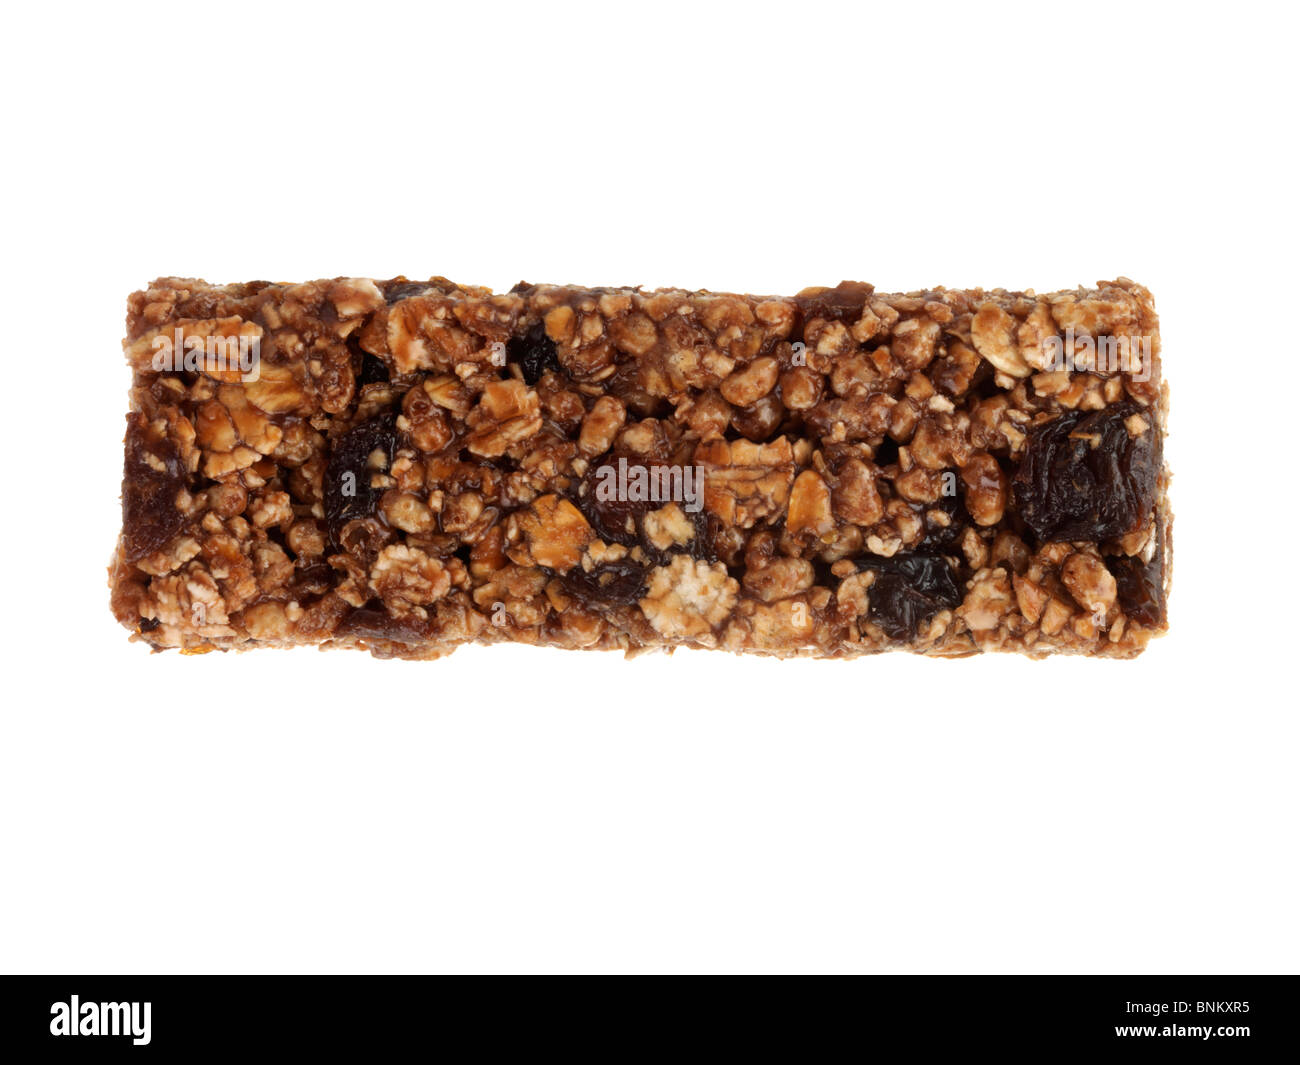 Raisin and Chocolate Bar Stock Photo